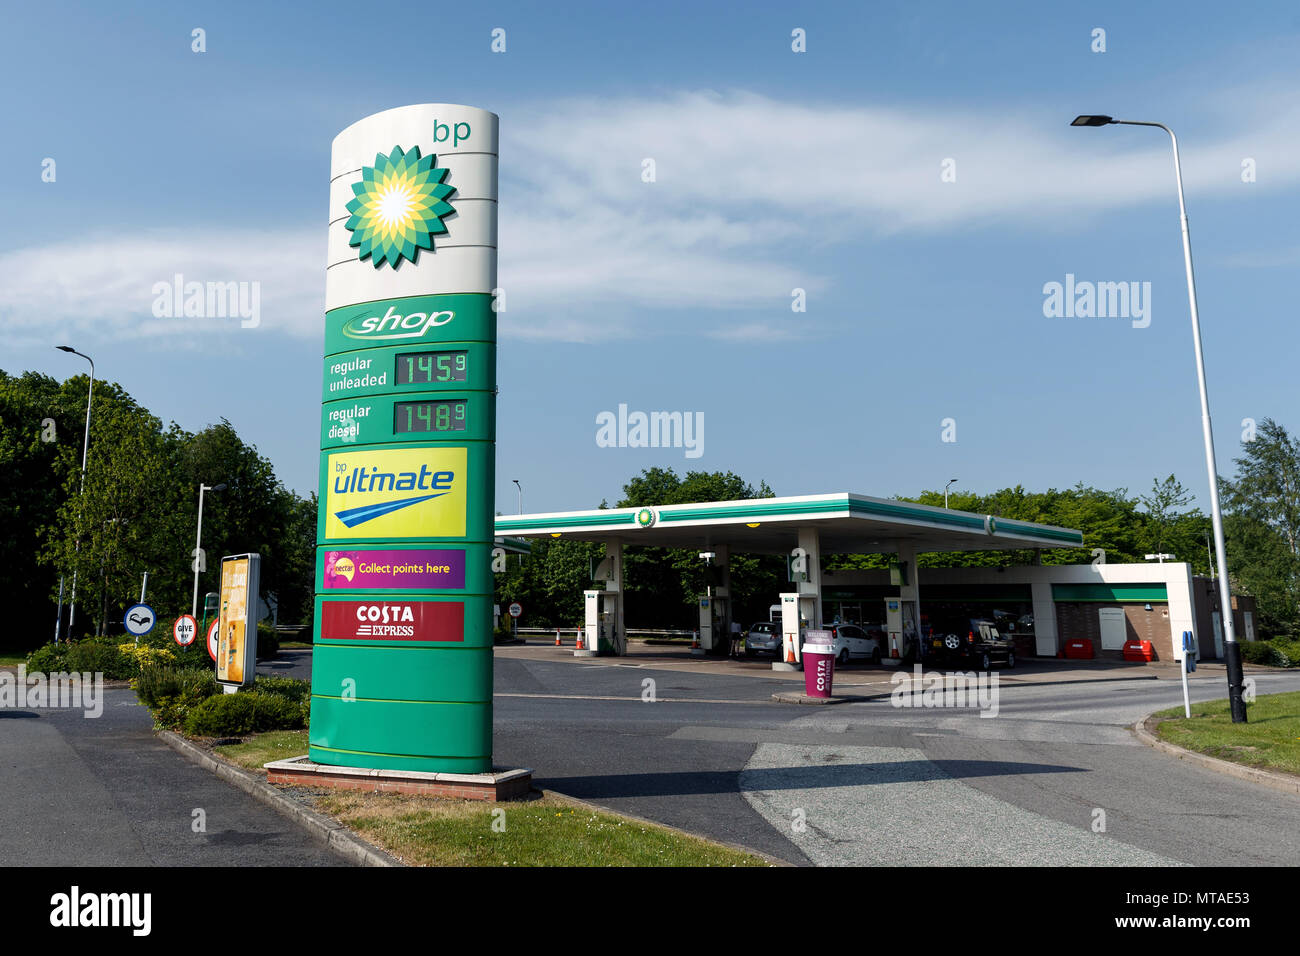 Una gasolinera BP mostrando altos los precios de la gasolina en el Reino Unido. Gasolinera de BP, BP garaje. Foto de stock